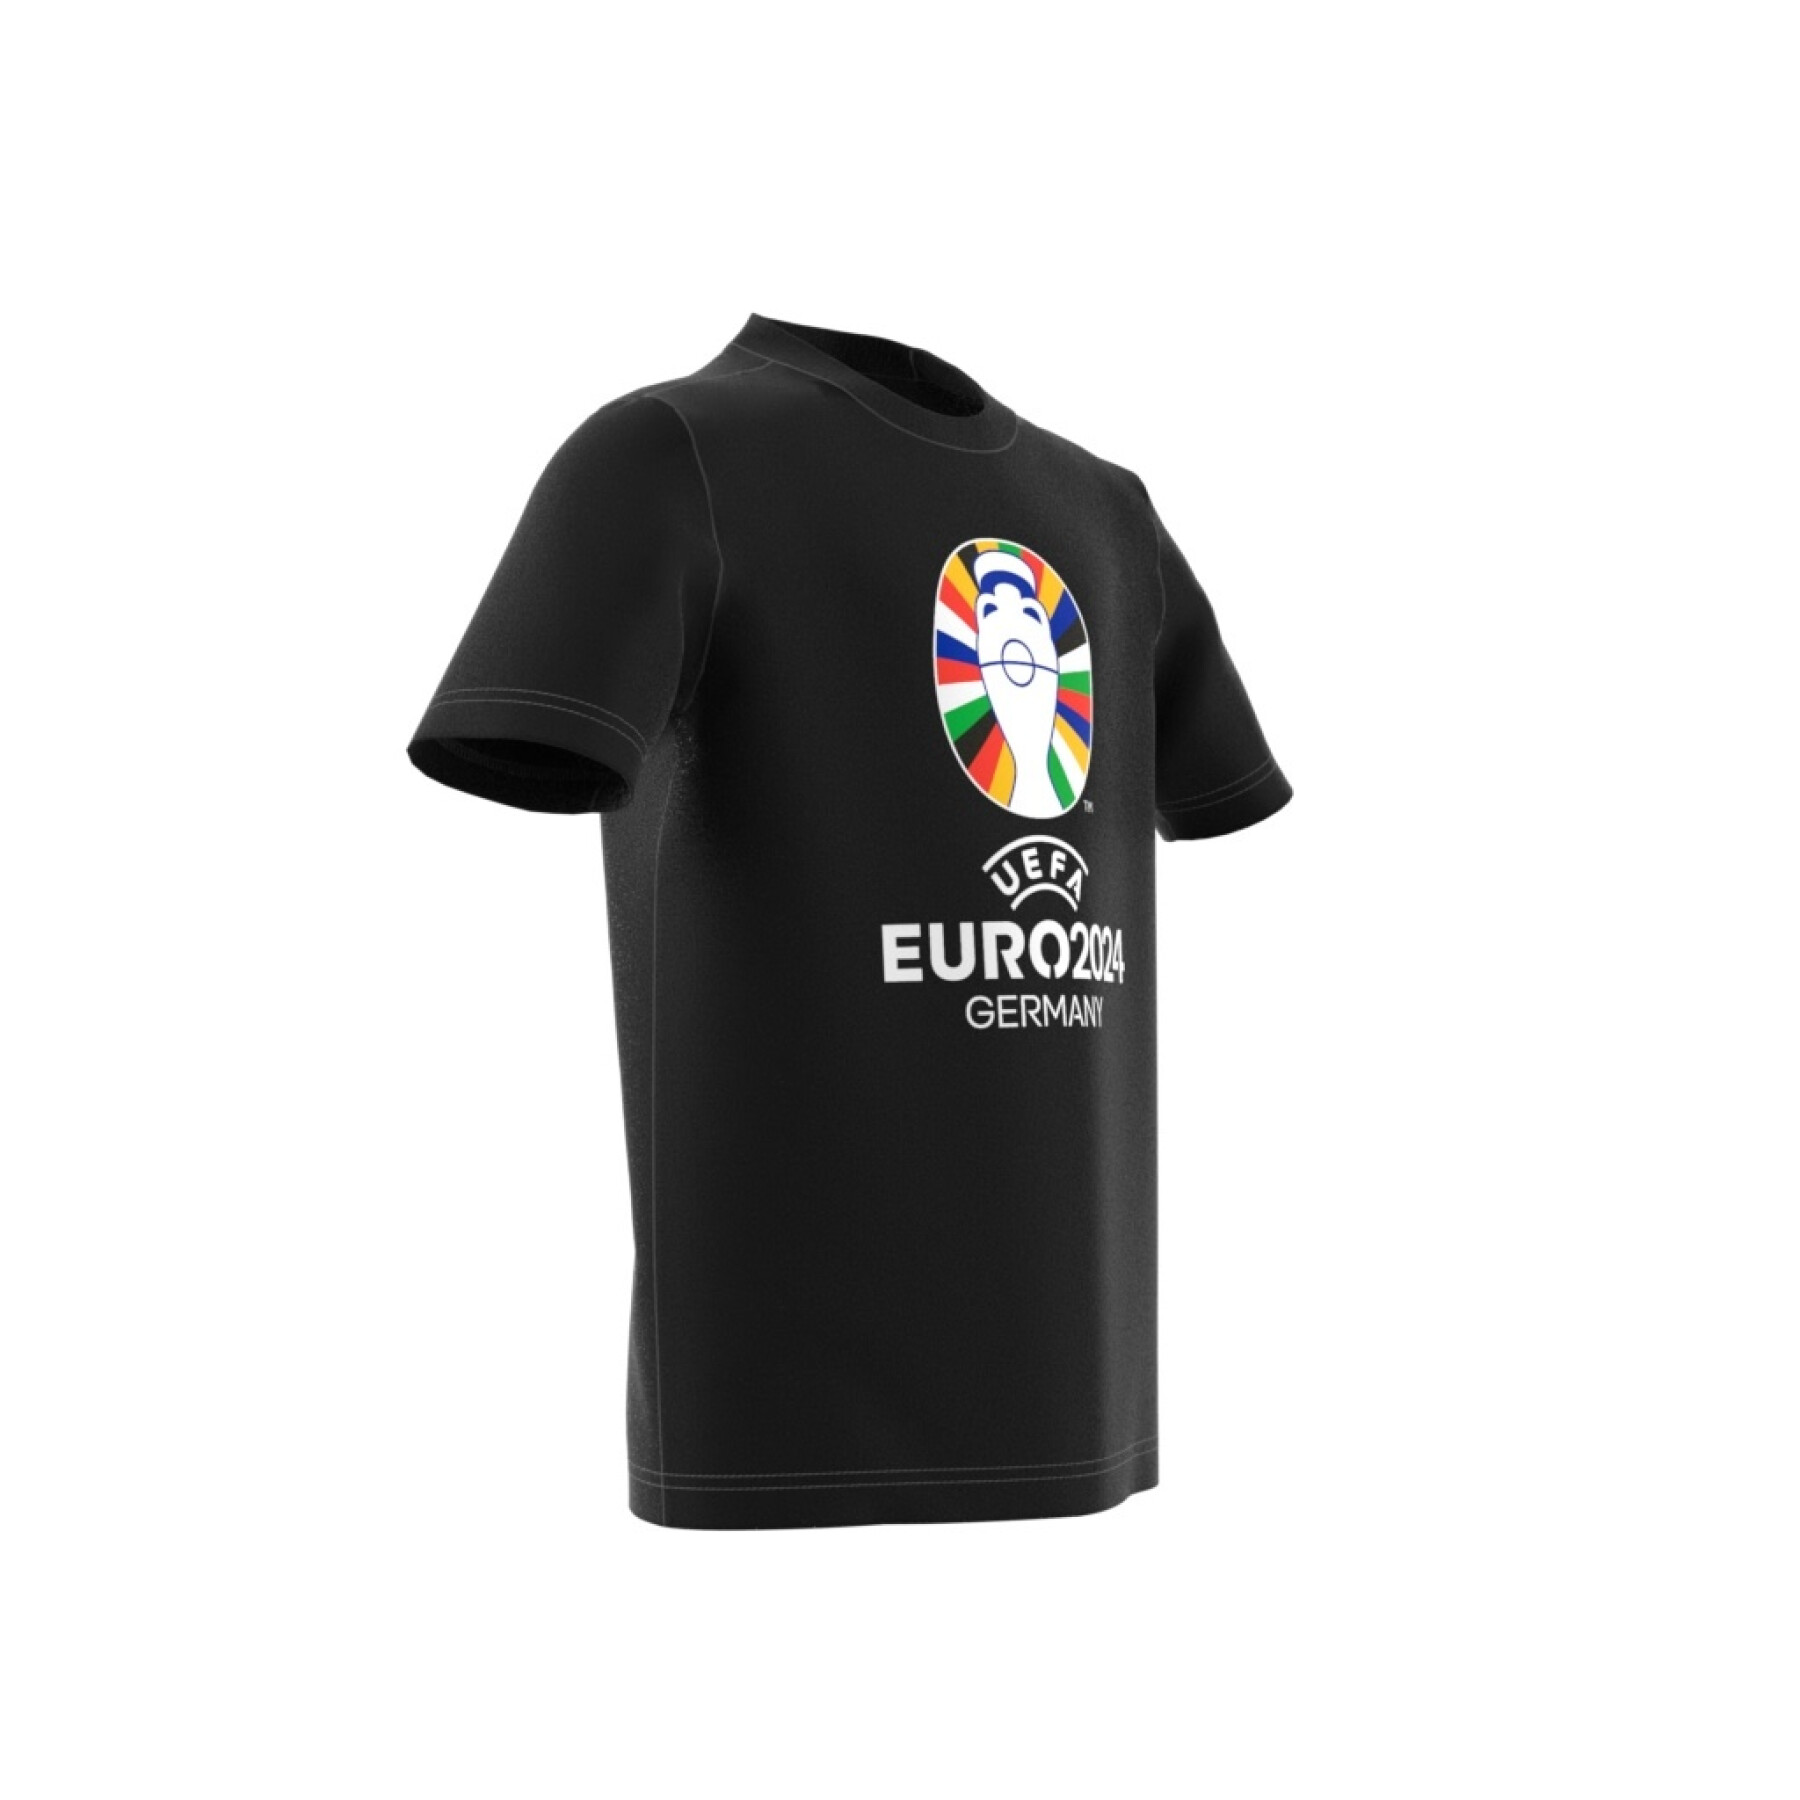 Kinder-T-shirt Allemagne Official Emblem Euro 2024